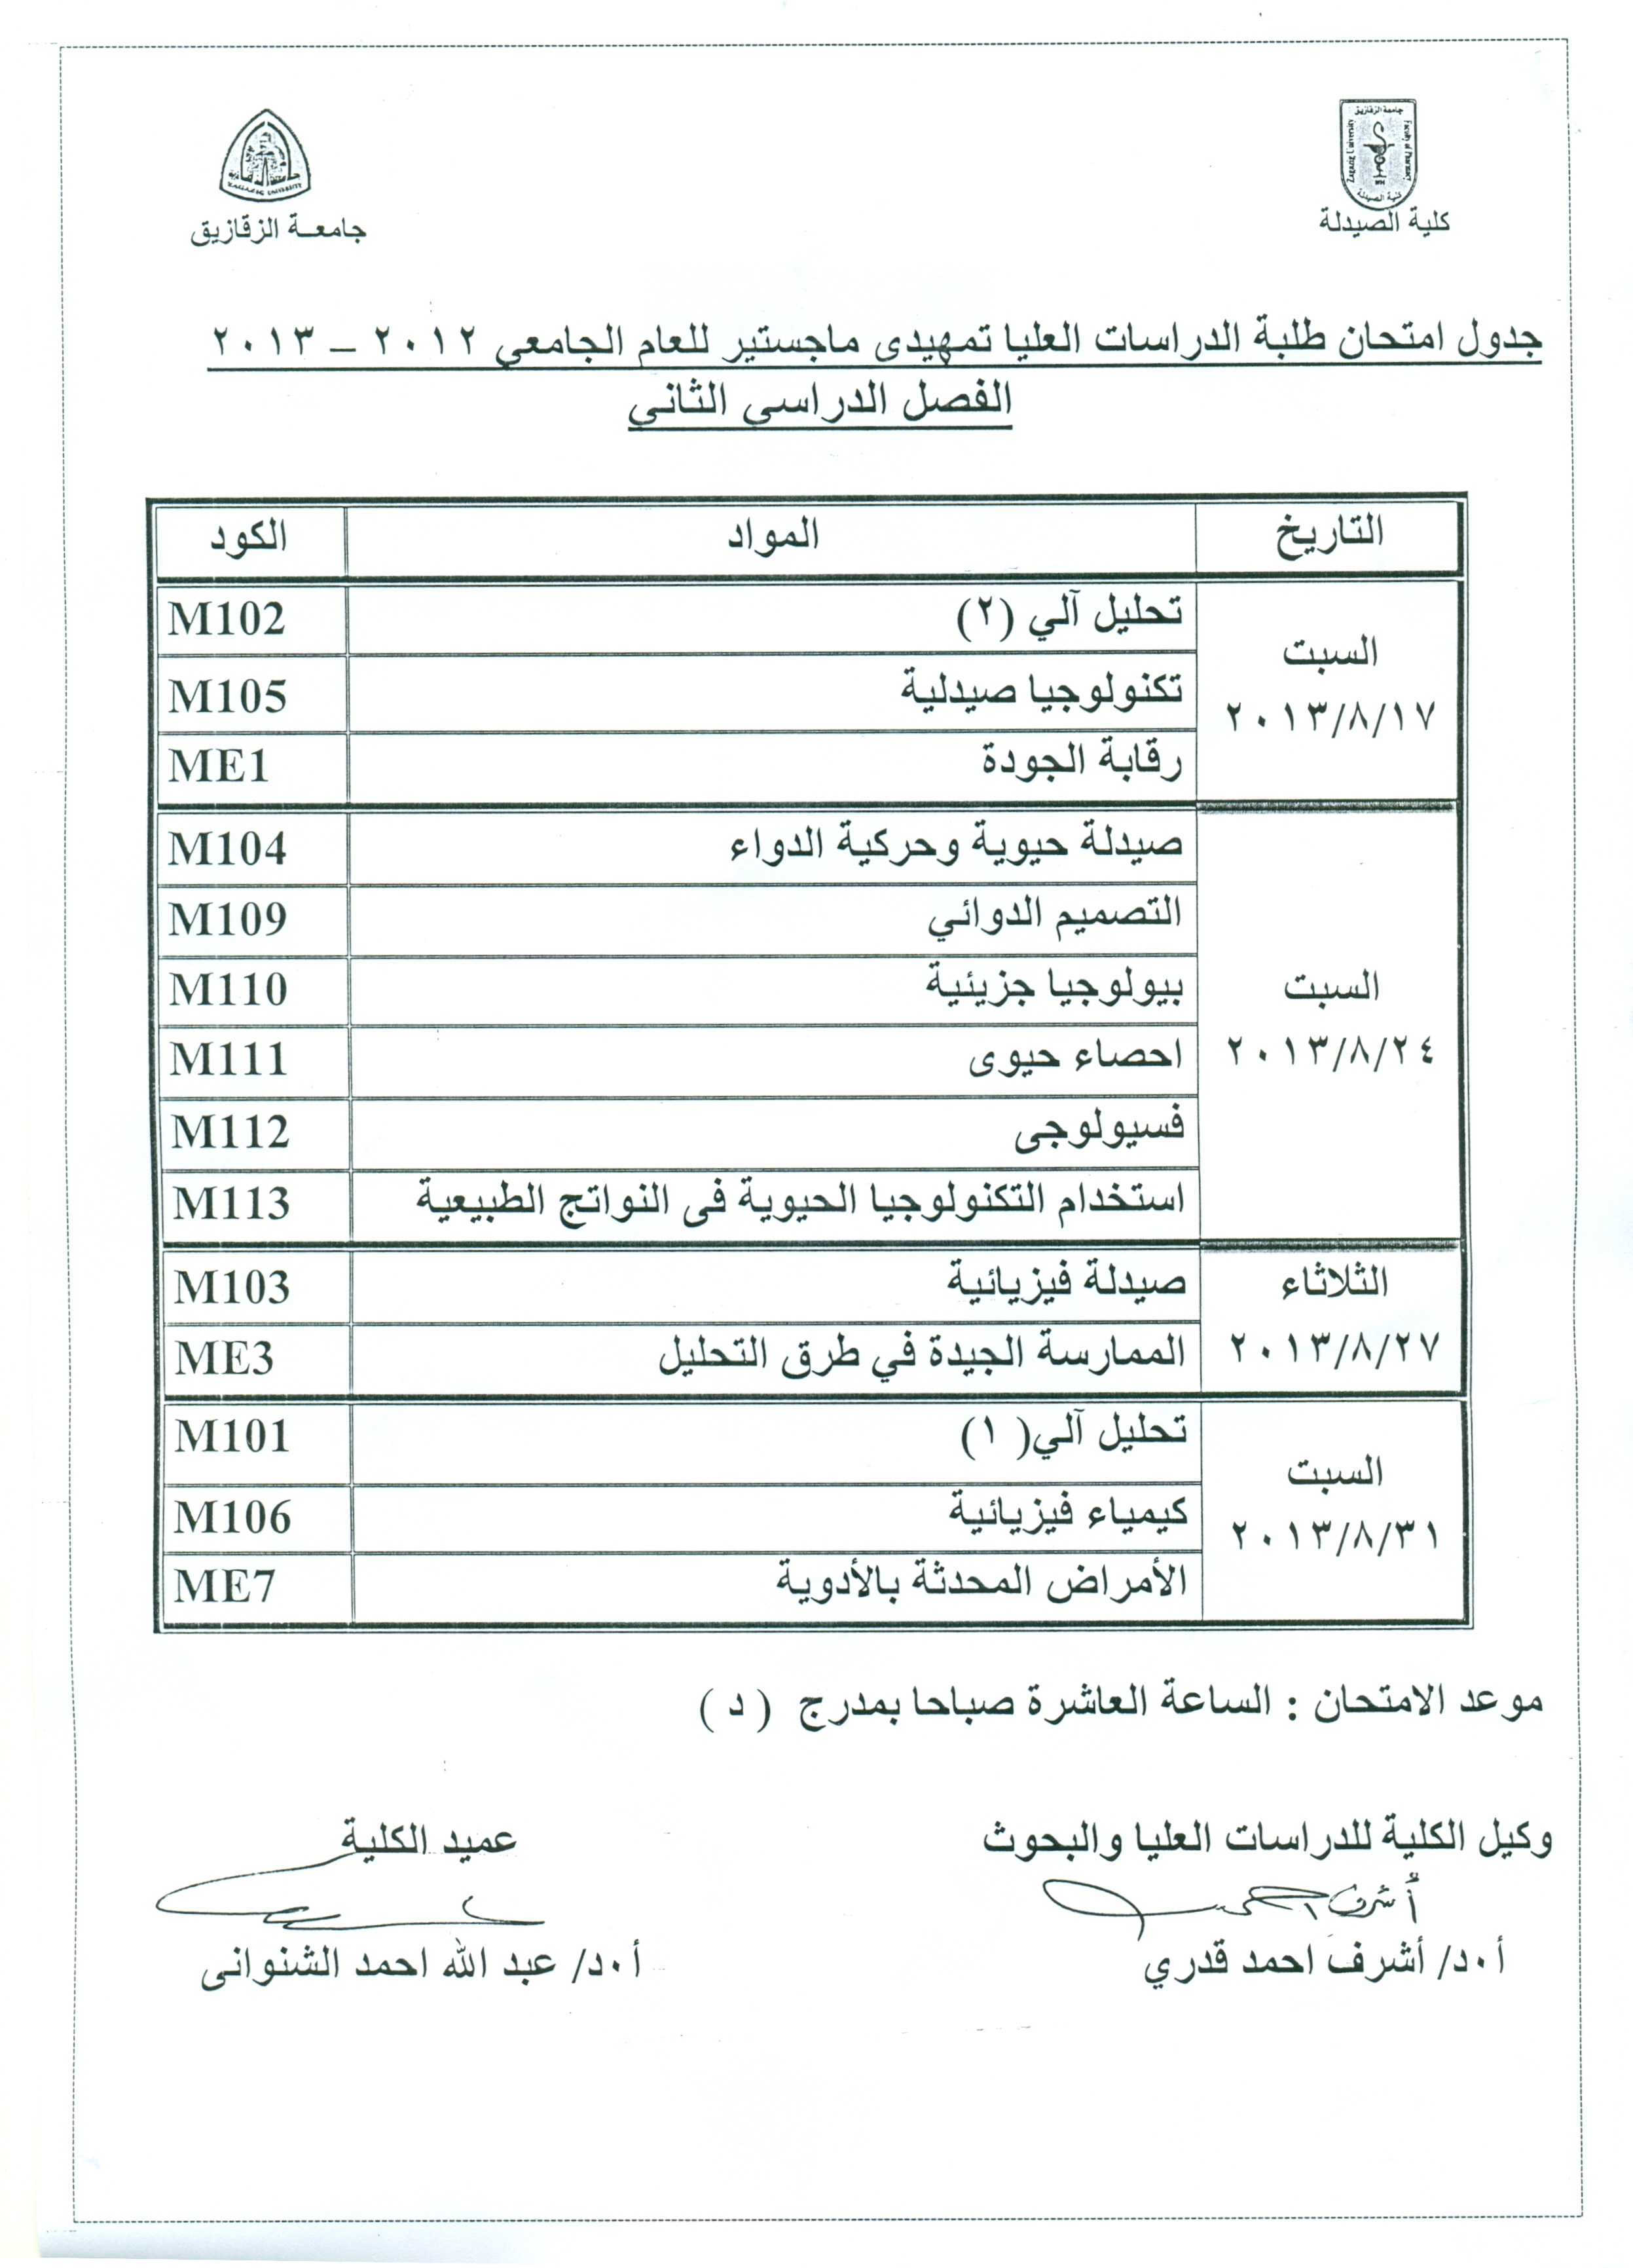 جدول إمتحان طلبة التمهيدى ماجستير الفصل الدراسى الثانى للعام الجامعى 2012/2013